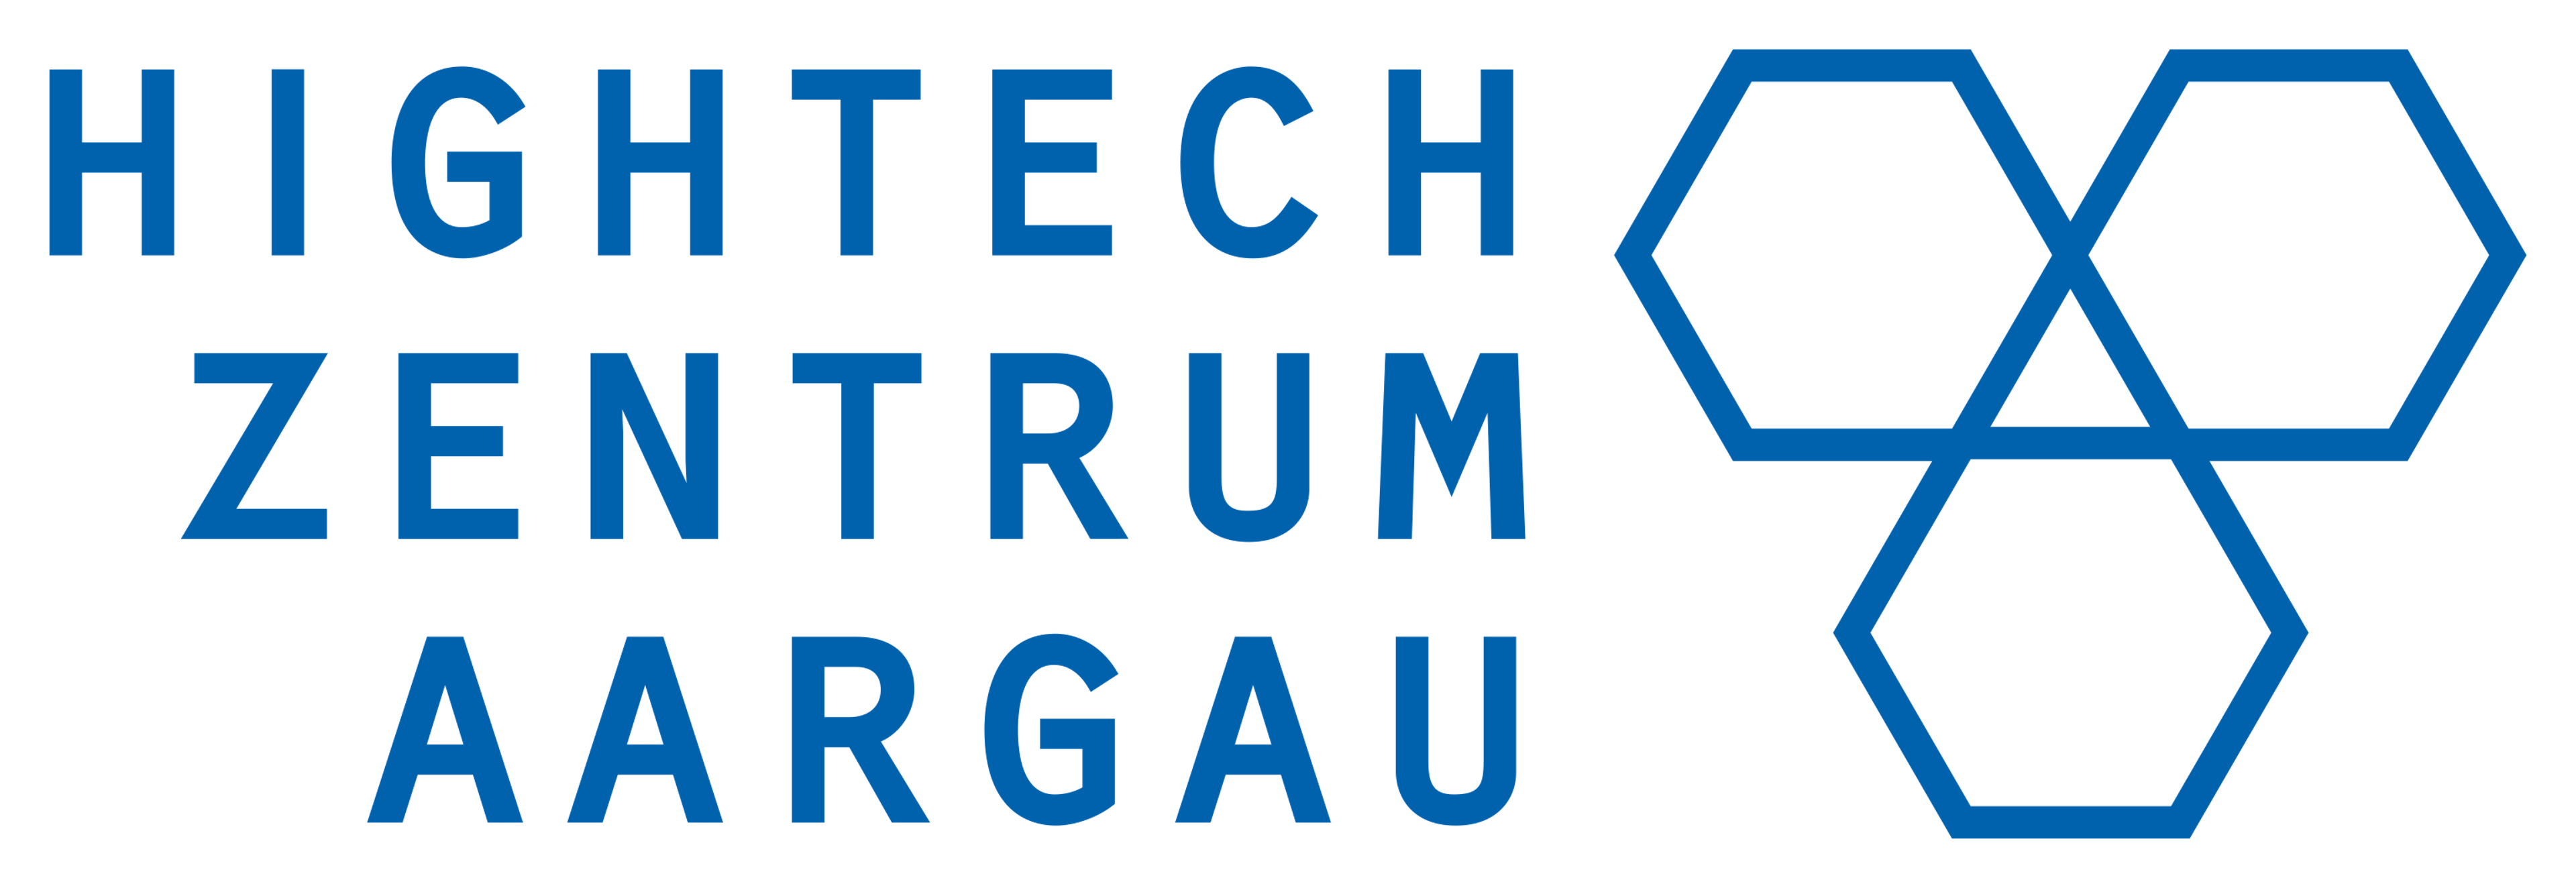 Hightech Zentrums Aargau